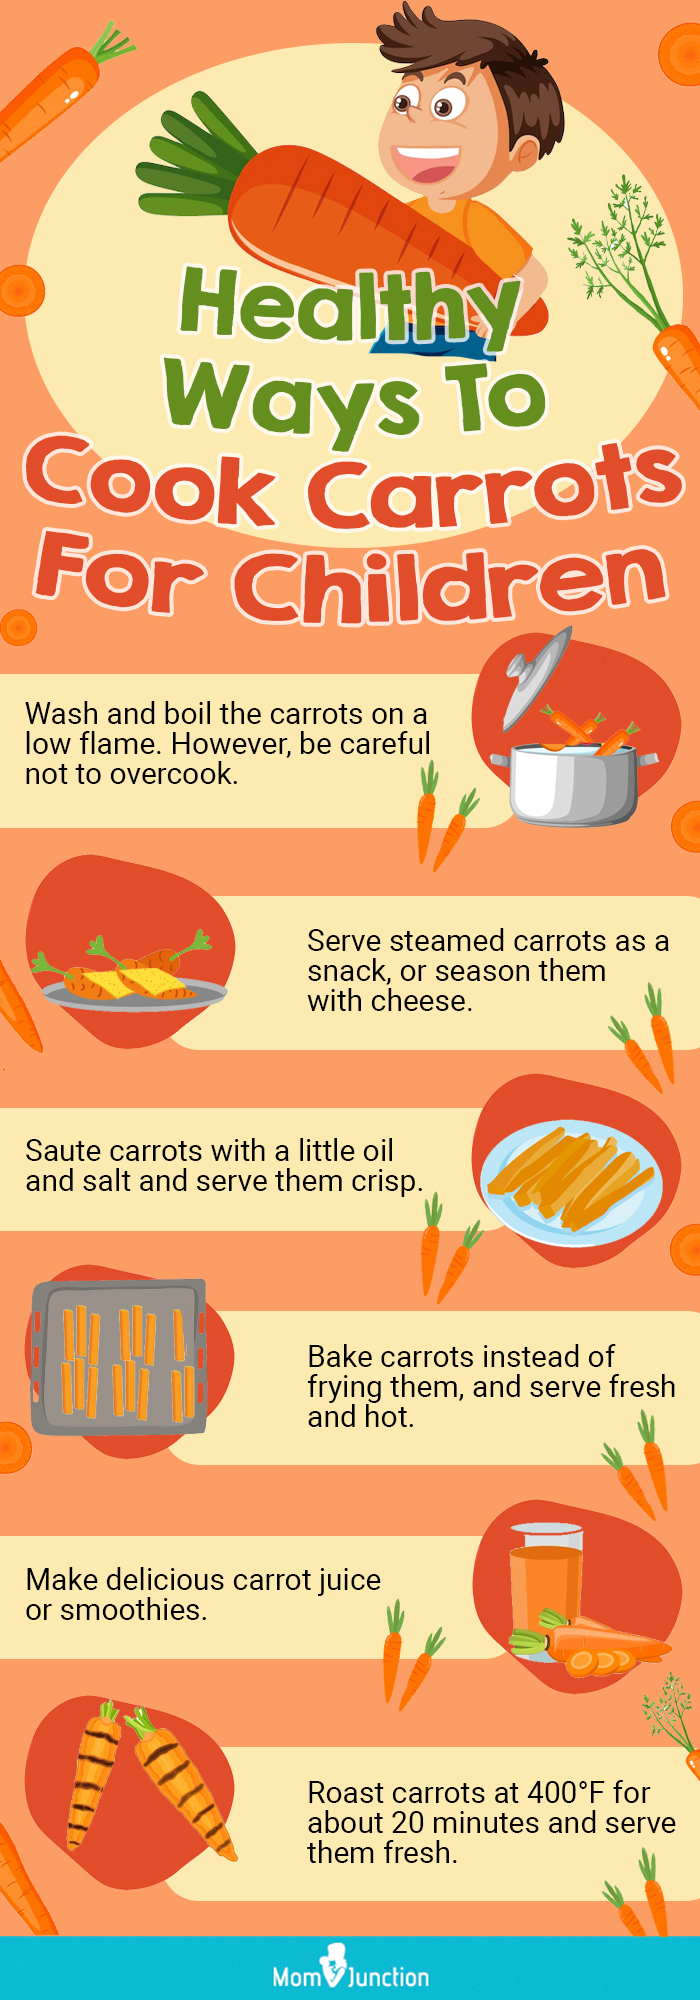 为儿童烹饪胡萝卜的健康方法(信息图)